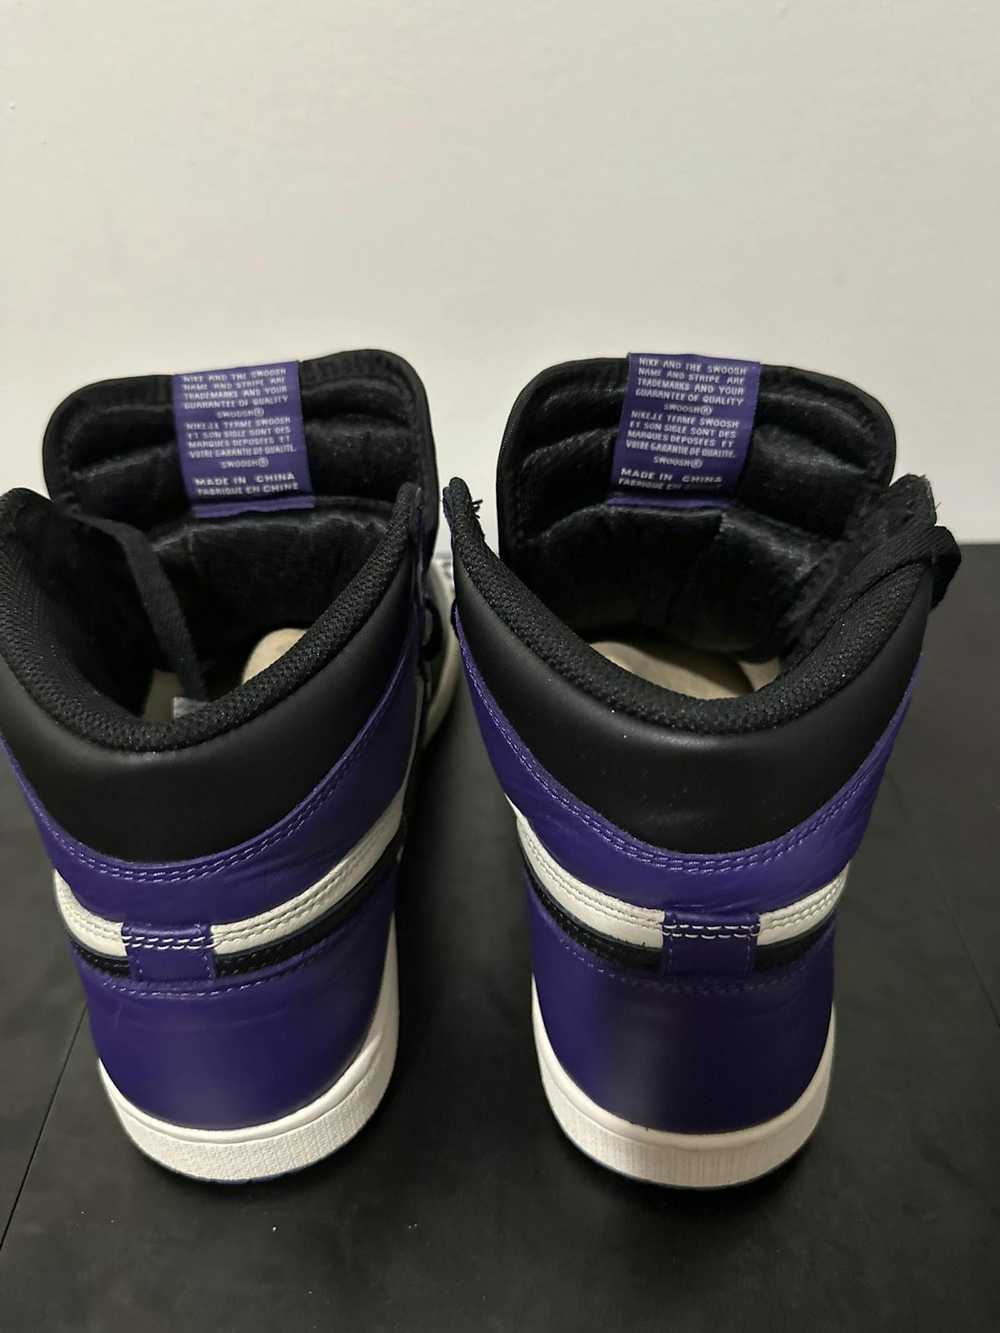 Jordan Brand Air Jordan 1 retro court purple - image 4